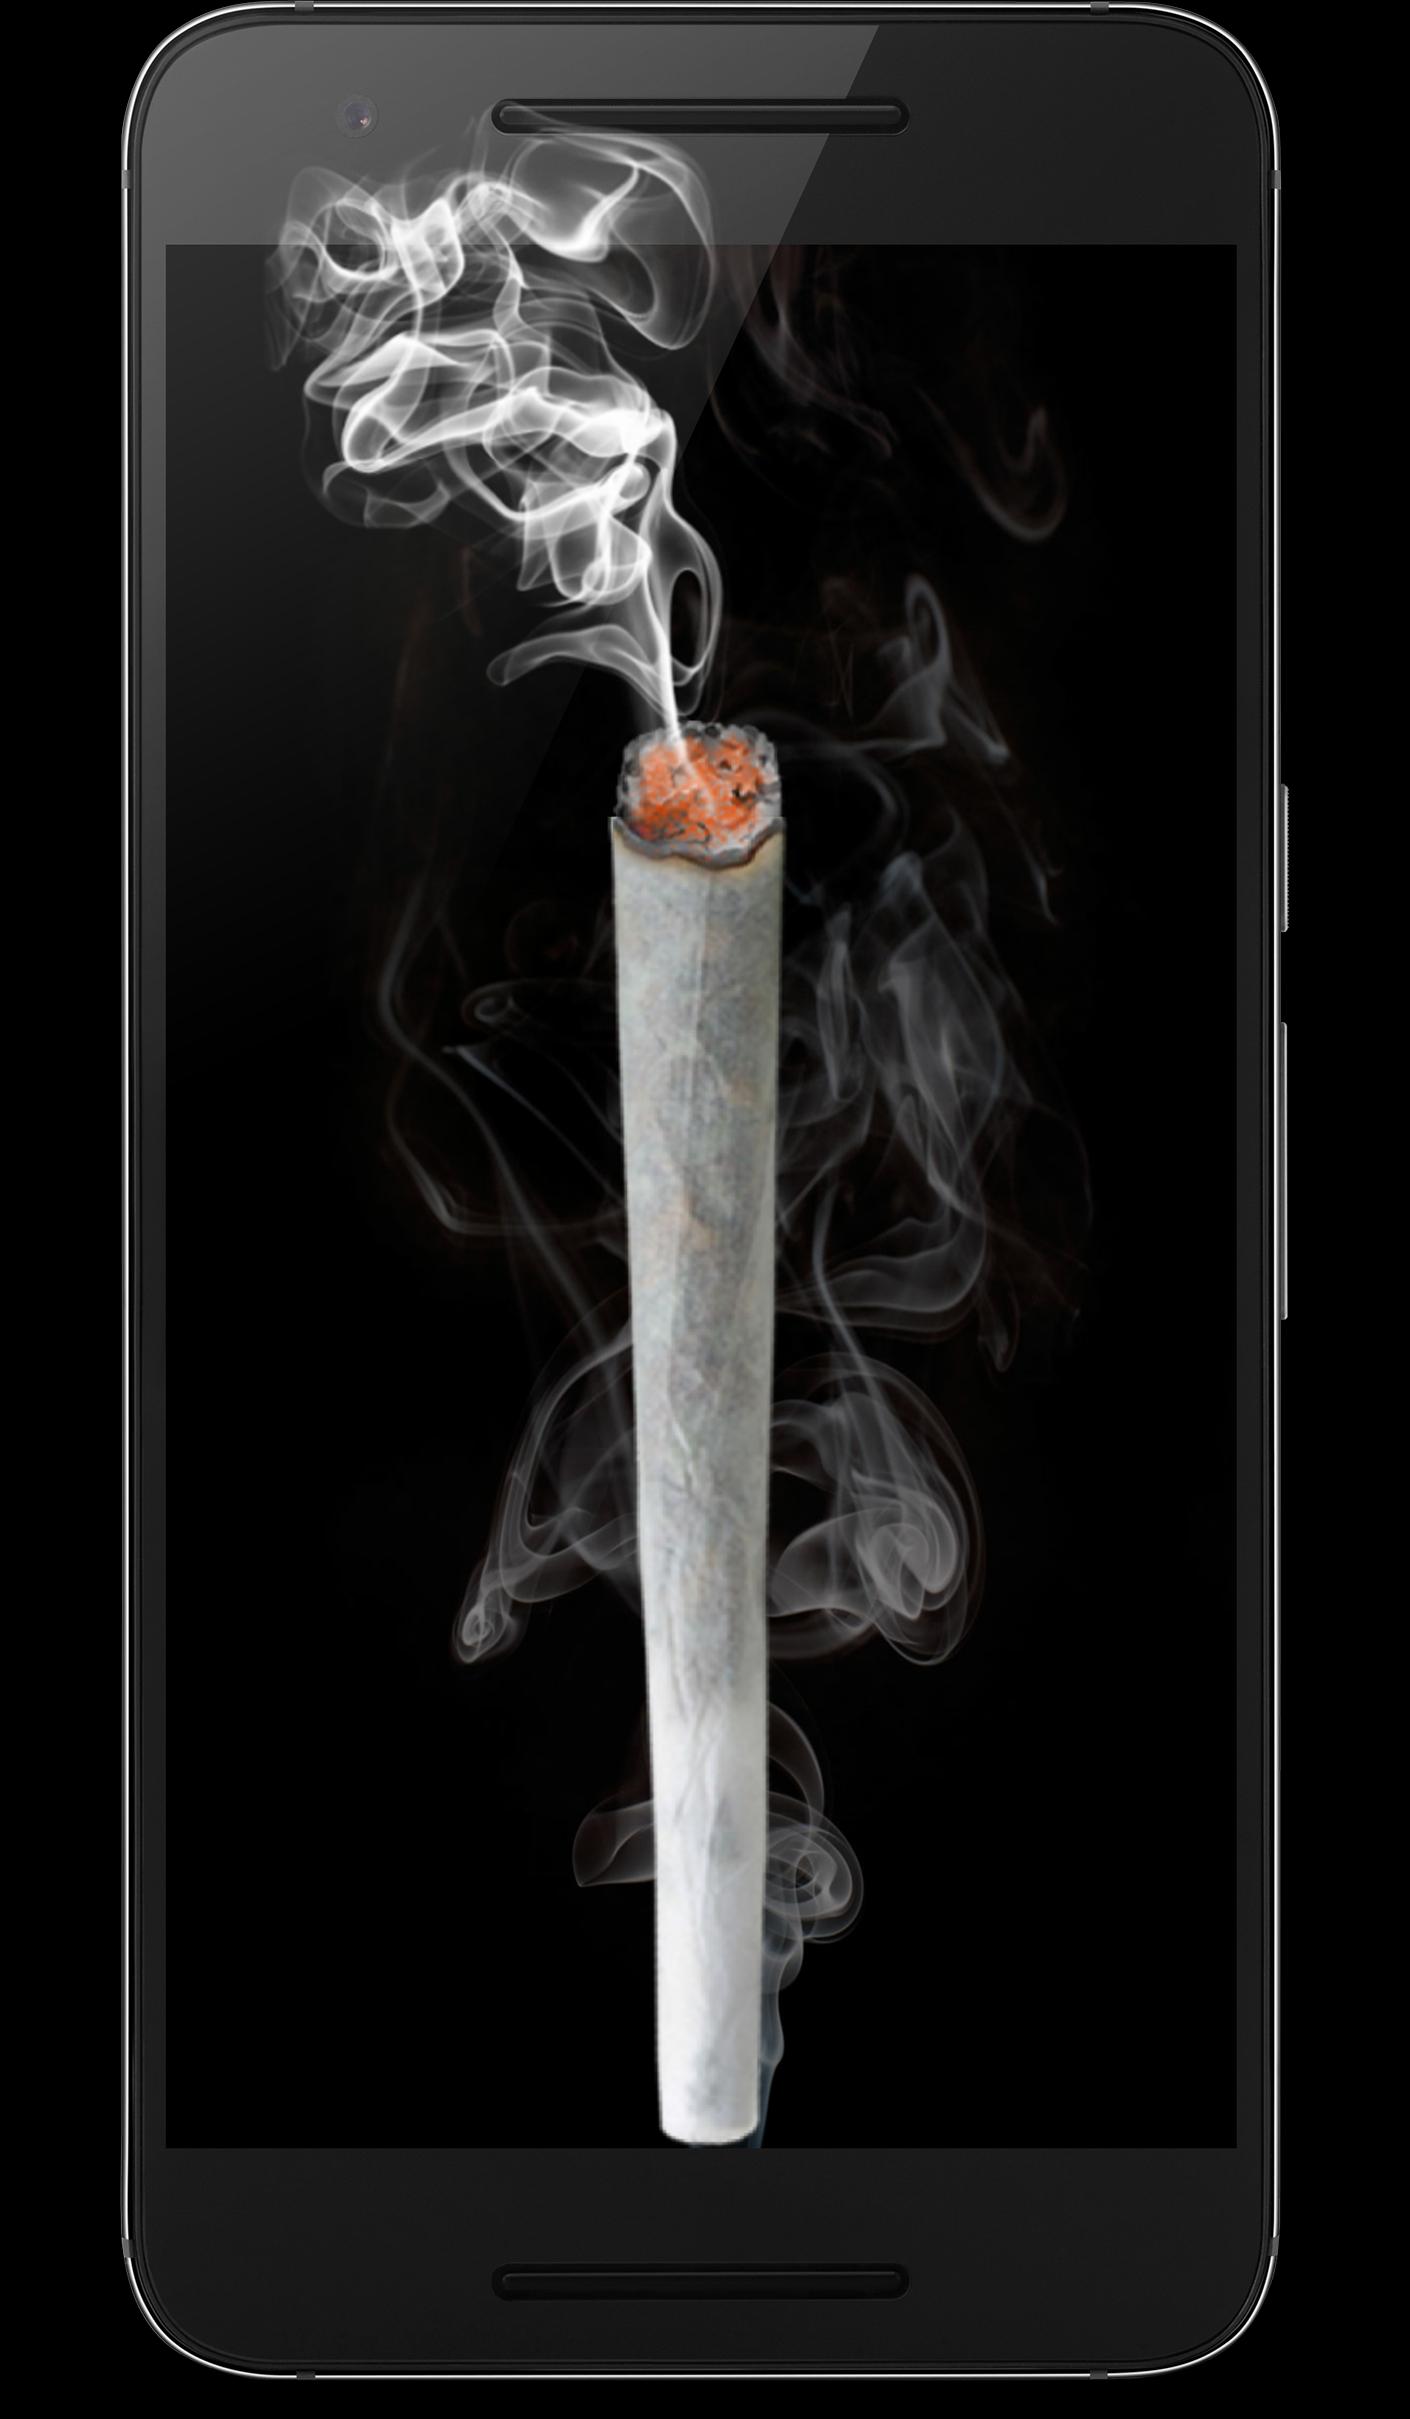 Скачать игру для андроида курит коноплю где купить в роттердаме марихуану